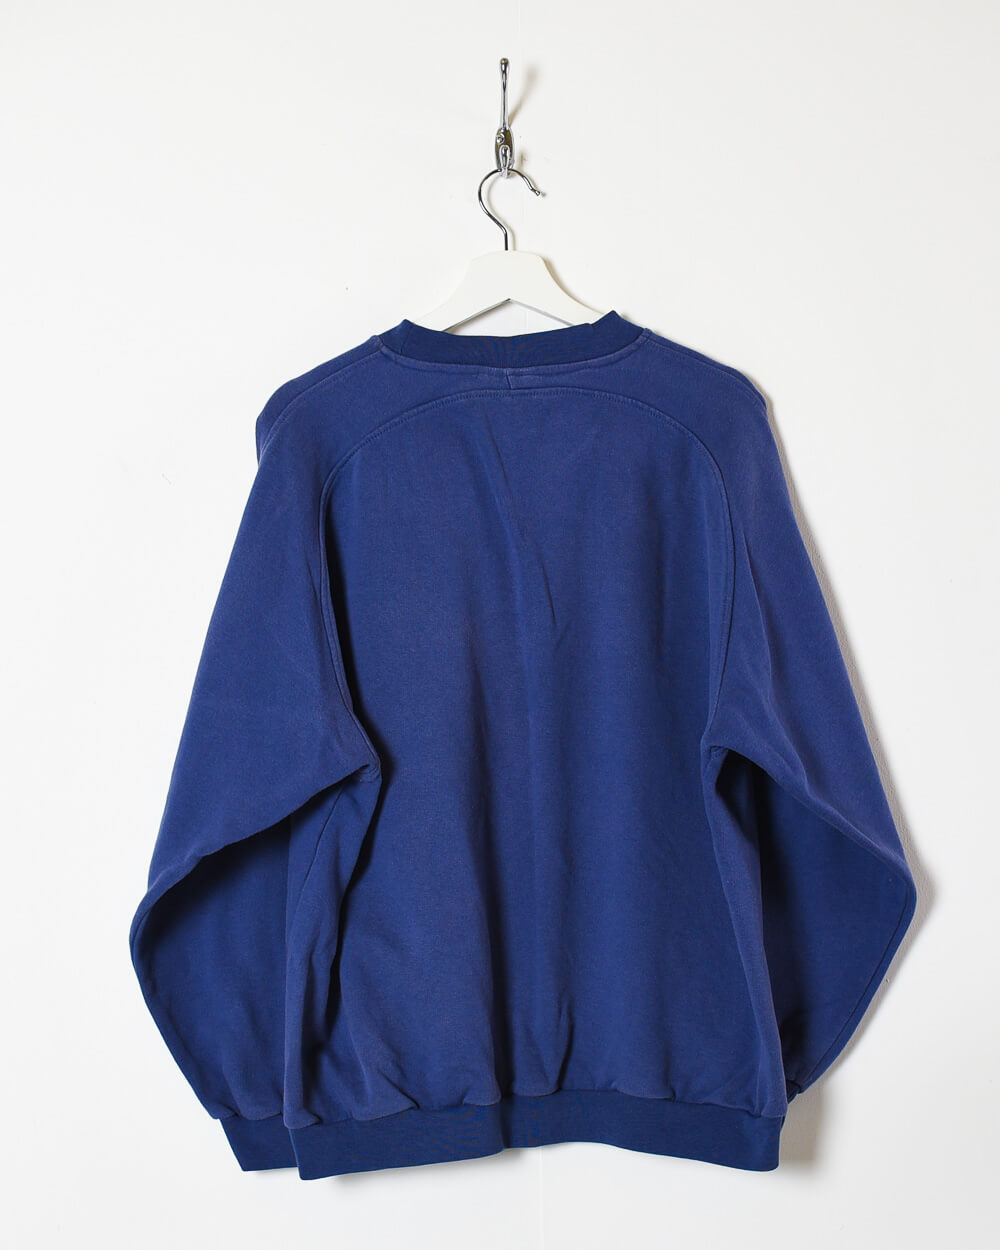 Blue Mizuno Sweatshirt - Large